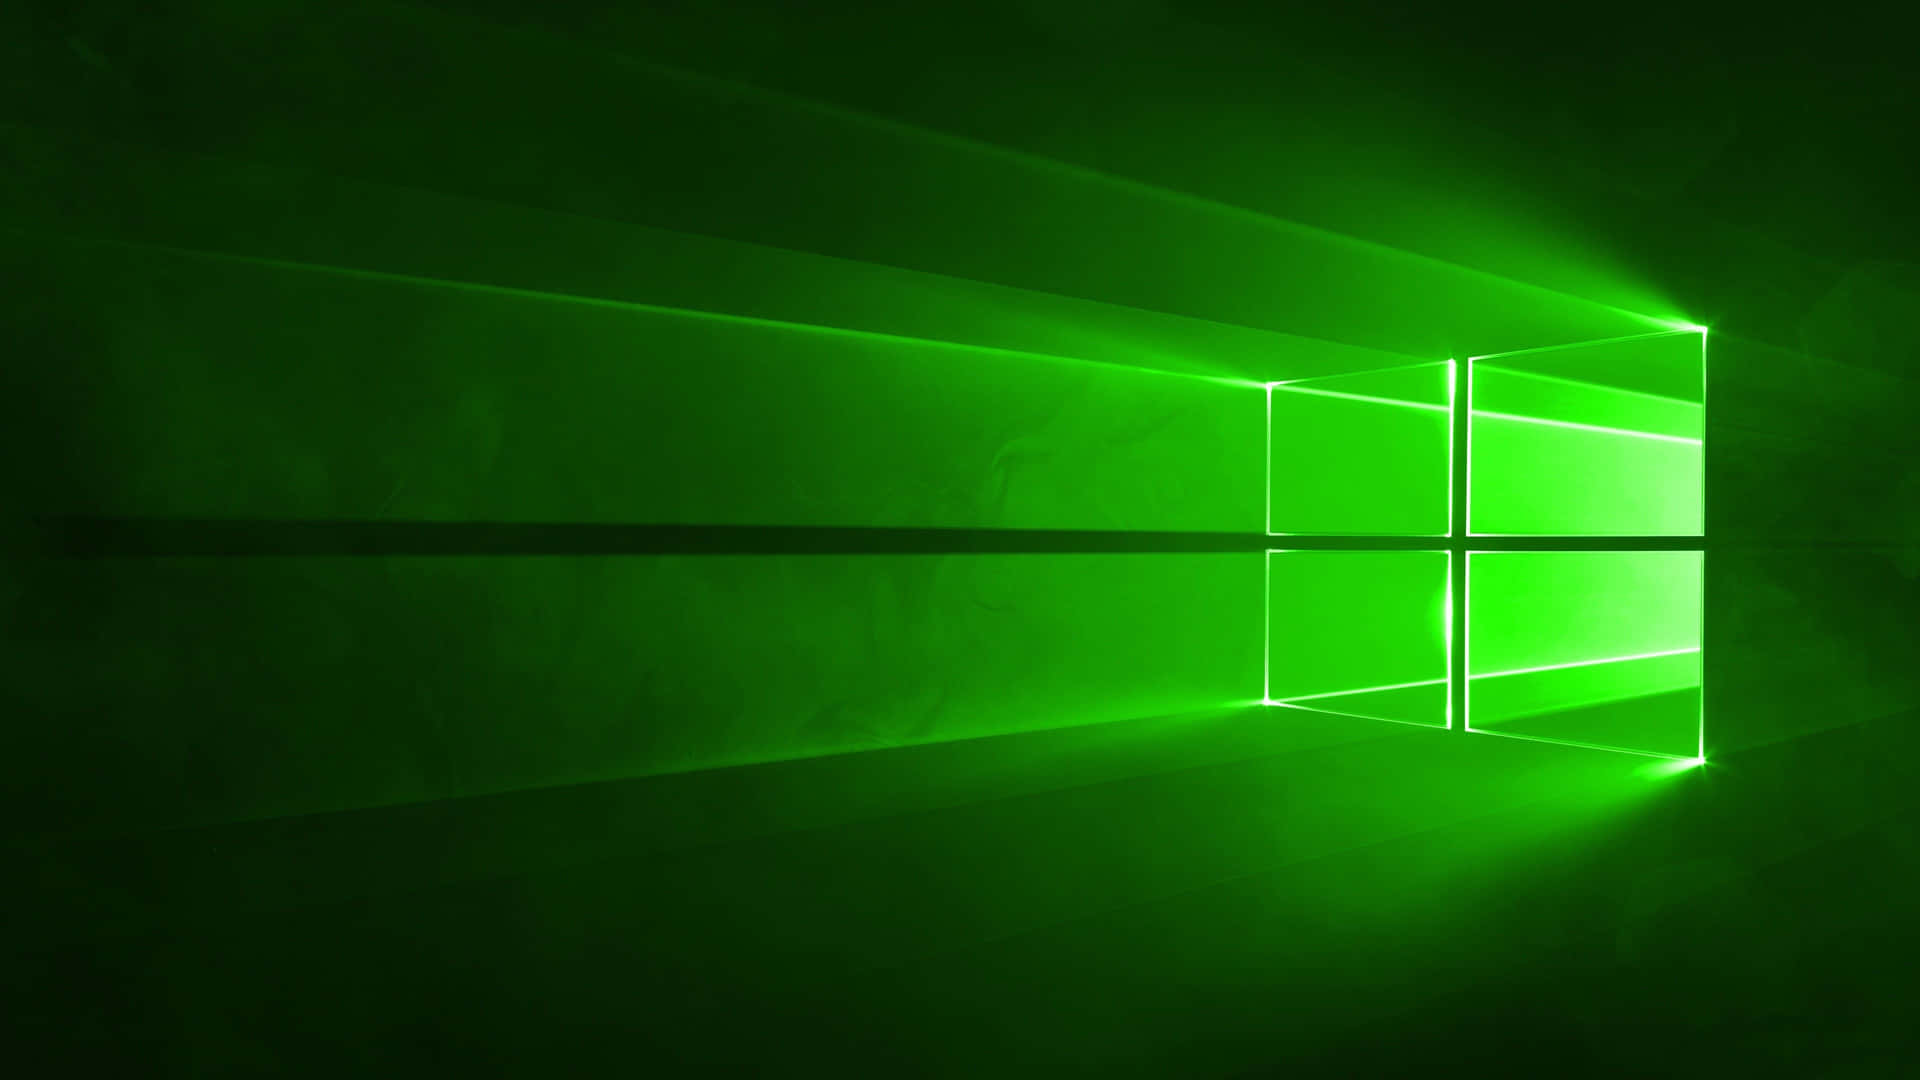 Bringensie Ihren Computer-desktop Auf Ein Neues Level Mit Diesem Lebendigen Grünen Hintergrund! Wallpaper